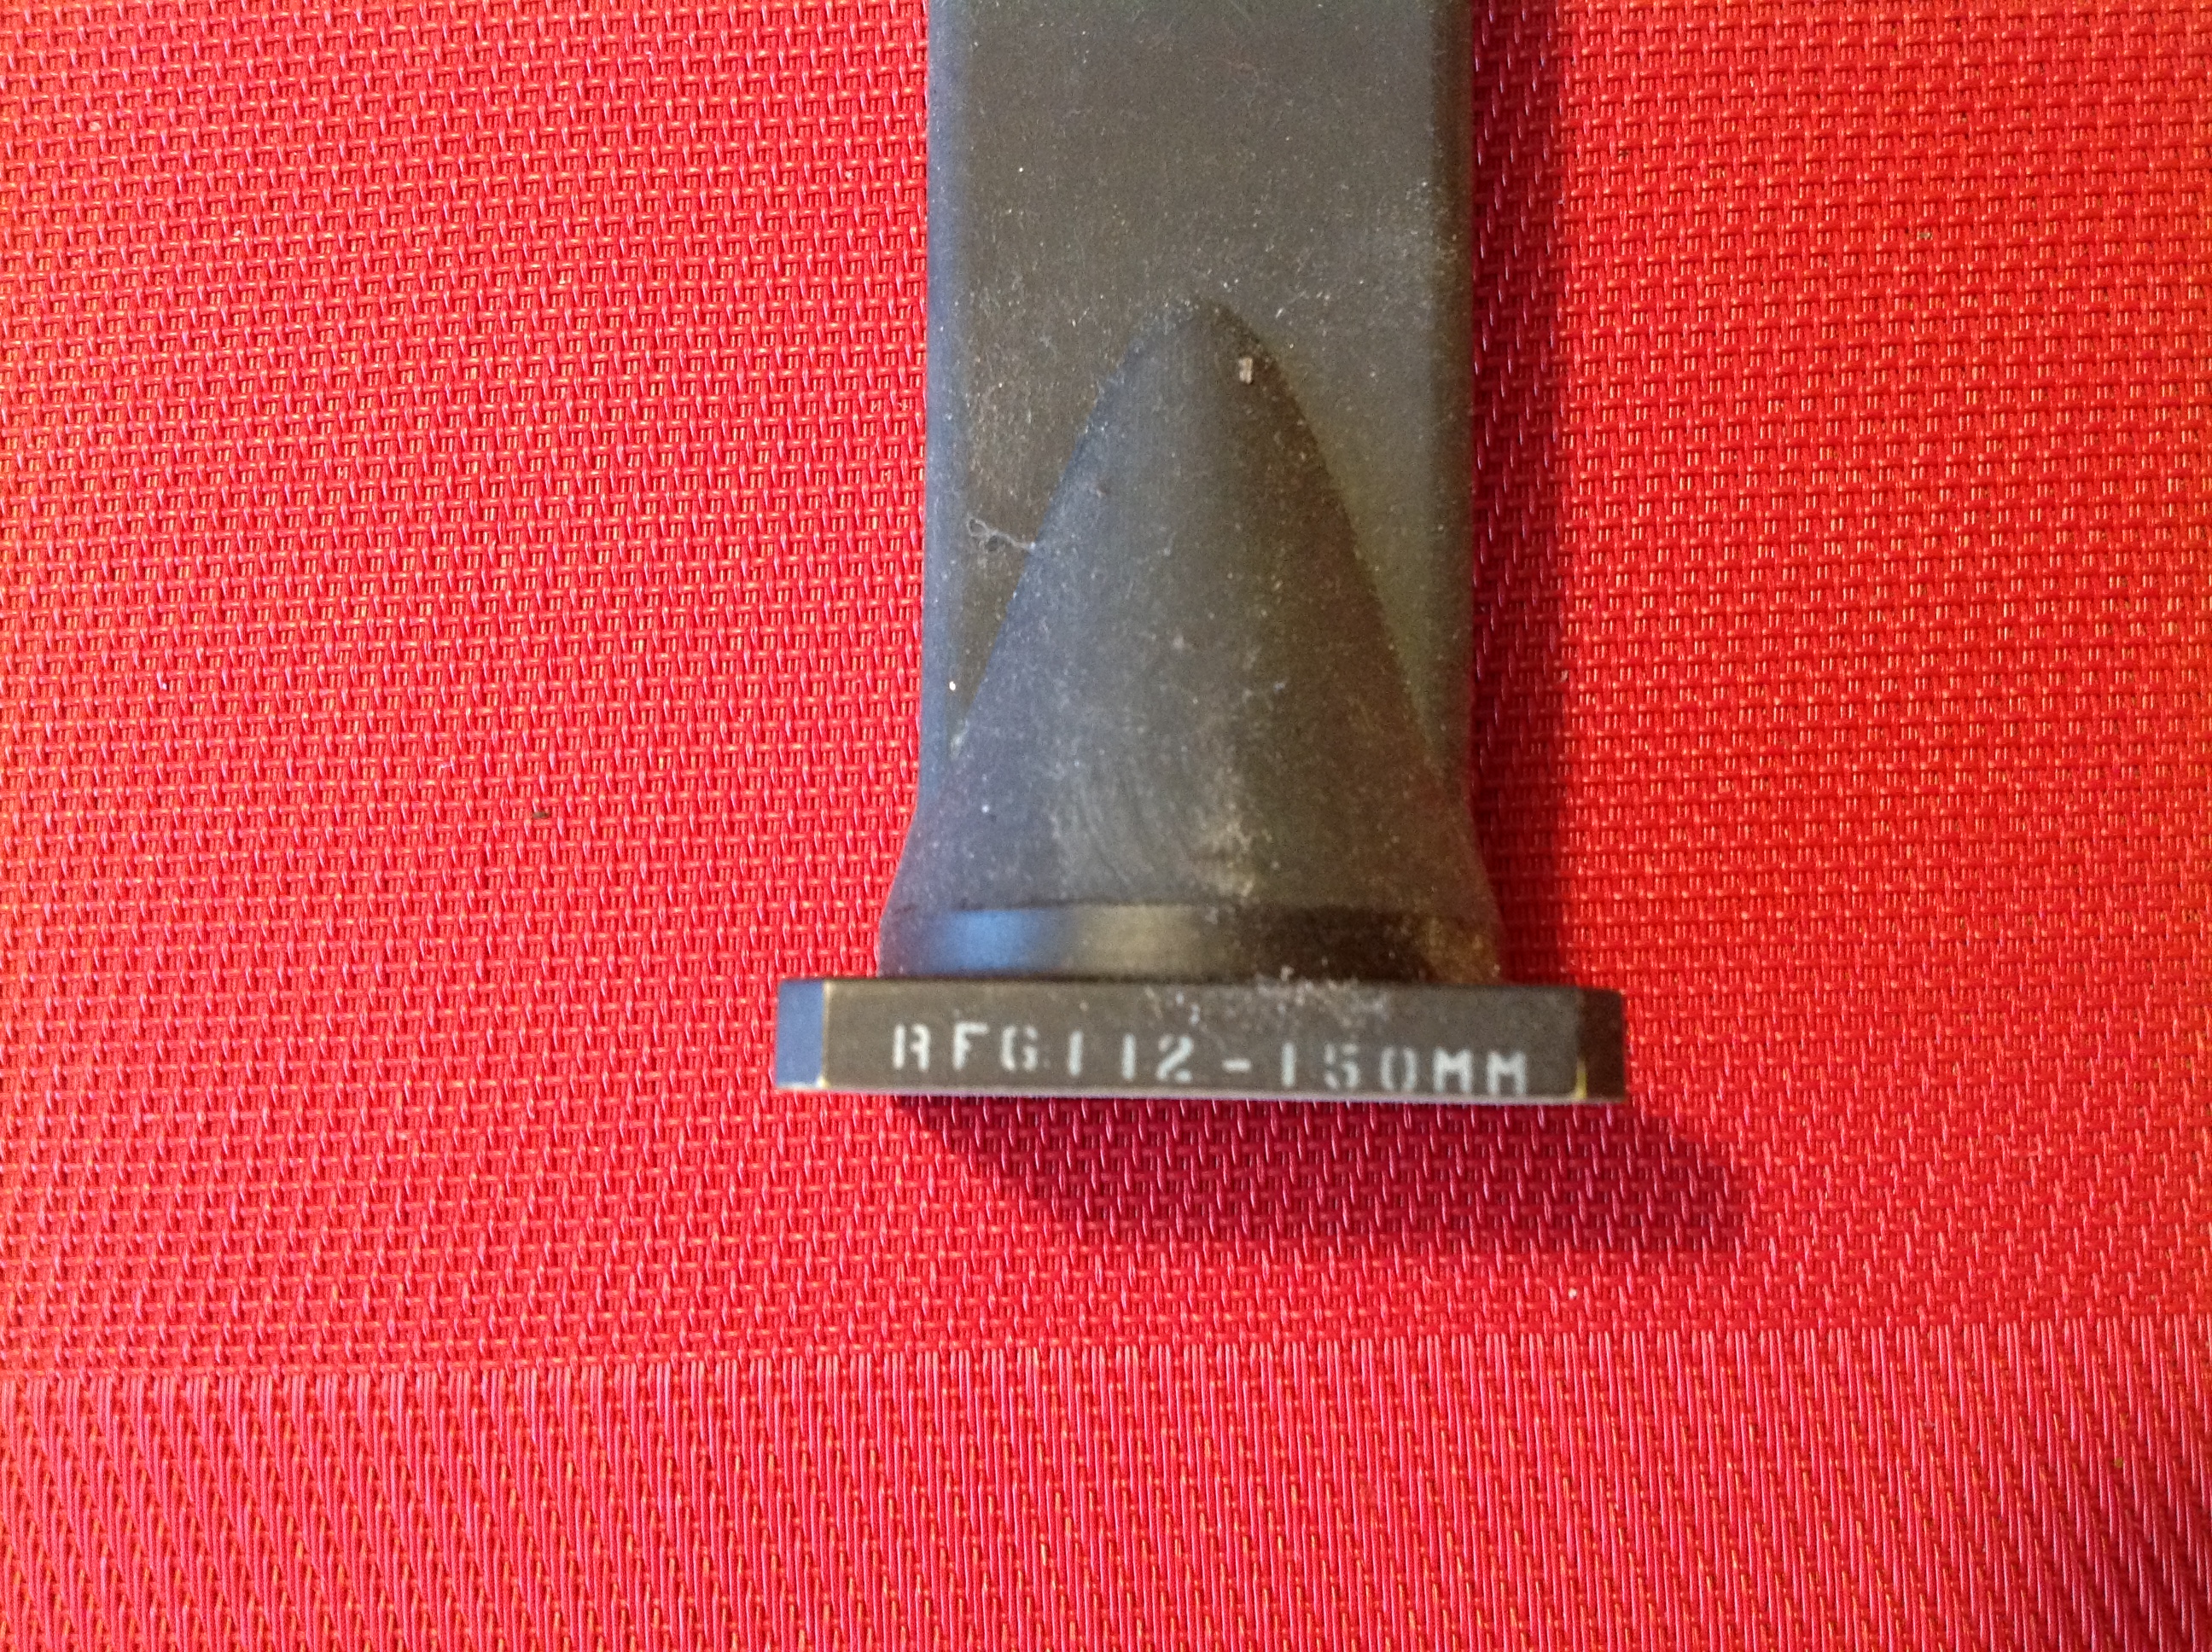 Hohlleiter RFG112-150 mm